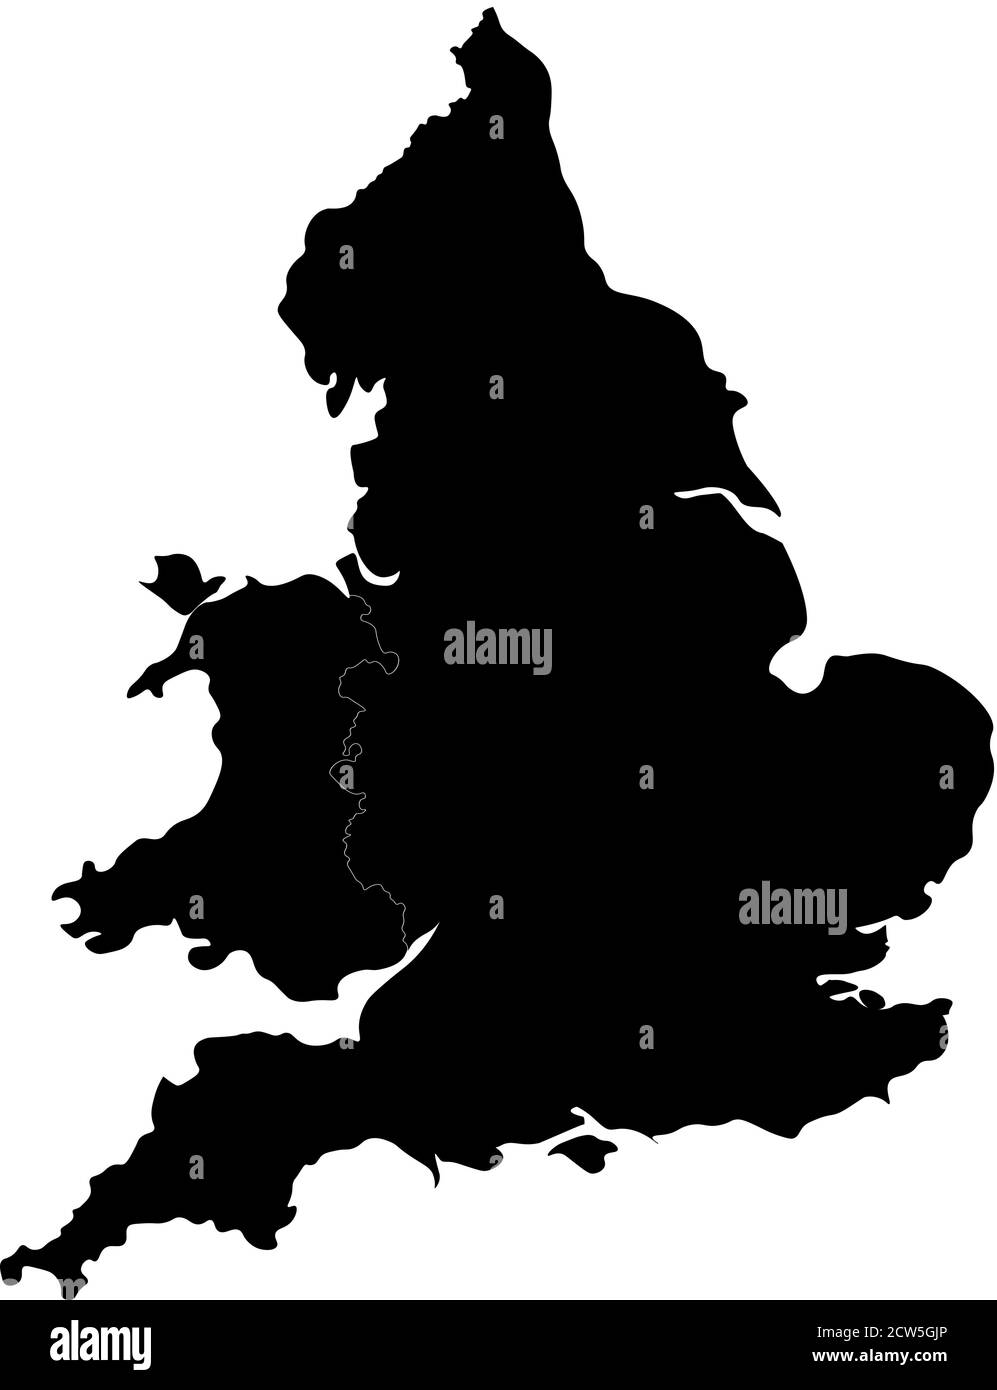 Silhouette de l'Angleterre et du pays de Galles. Carte bien conçue avec bords arrondis pour un look élégant. Illustration vectorielle. Illustration de Vecteur